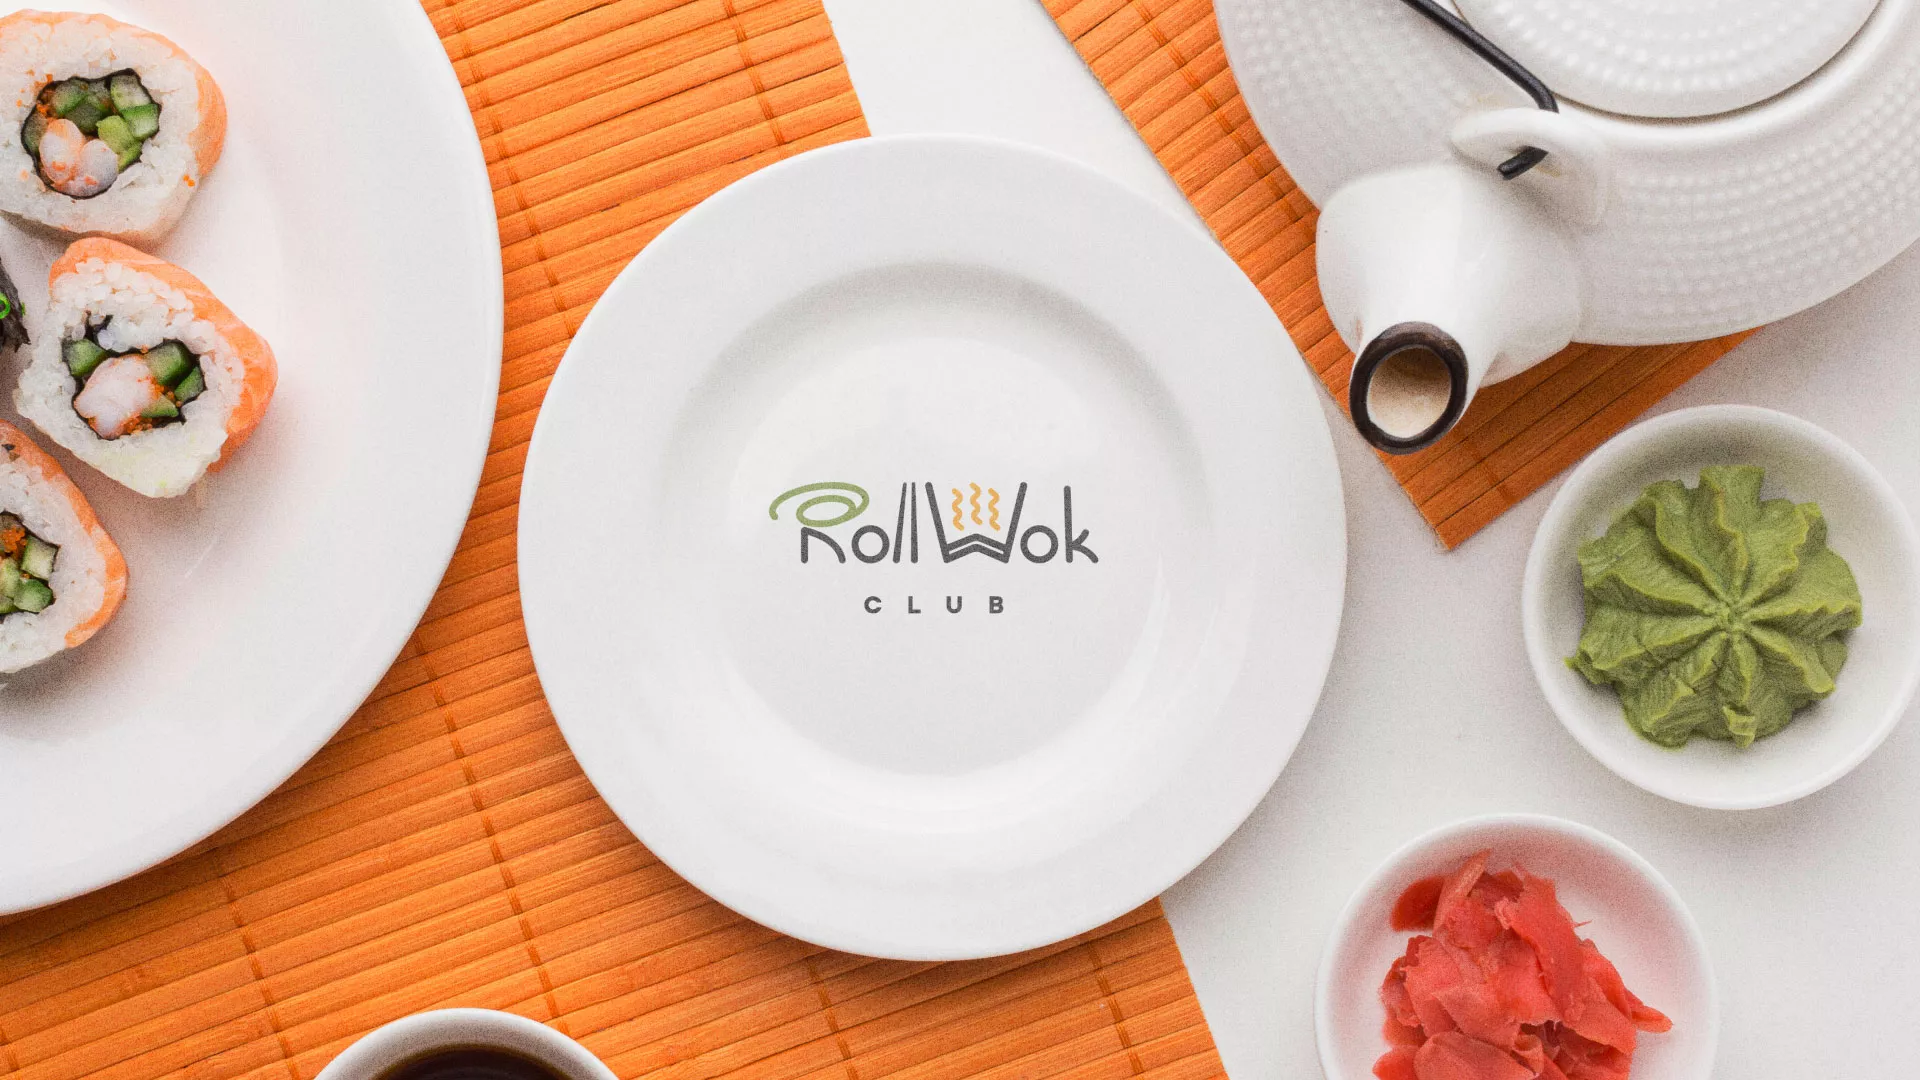 Разработка логотипа и фирменного стиля суши-бара «Roll Wok Club» в Жердевке